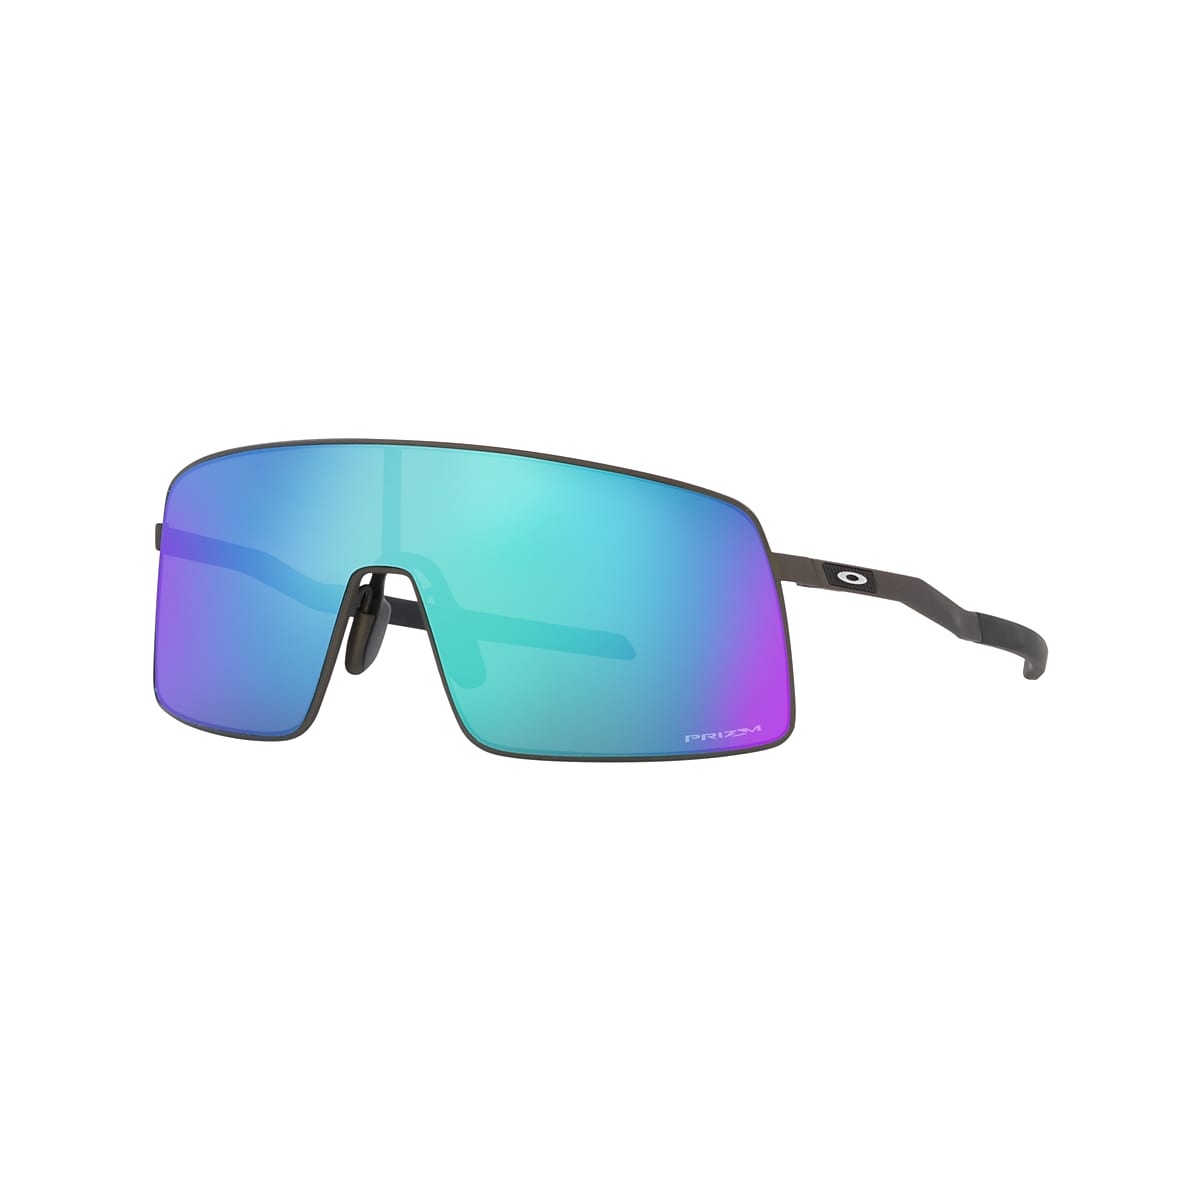 LVIOE P-Viper Oversized Modern Design Sports Sunglasses for Unisex